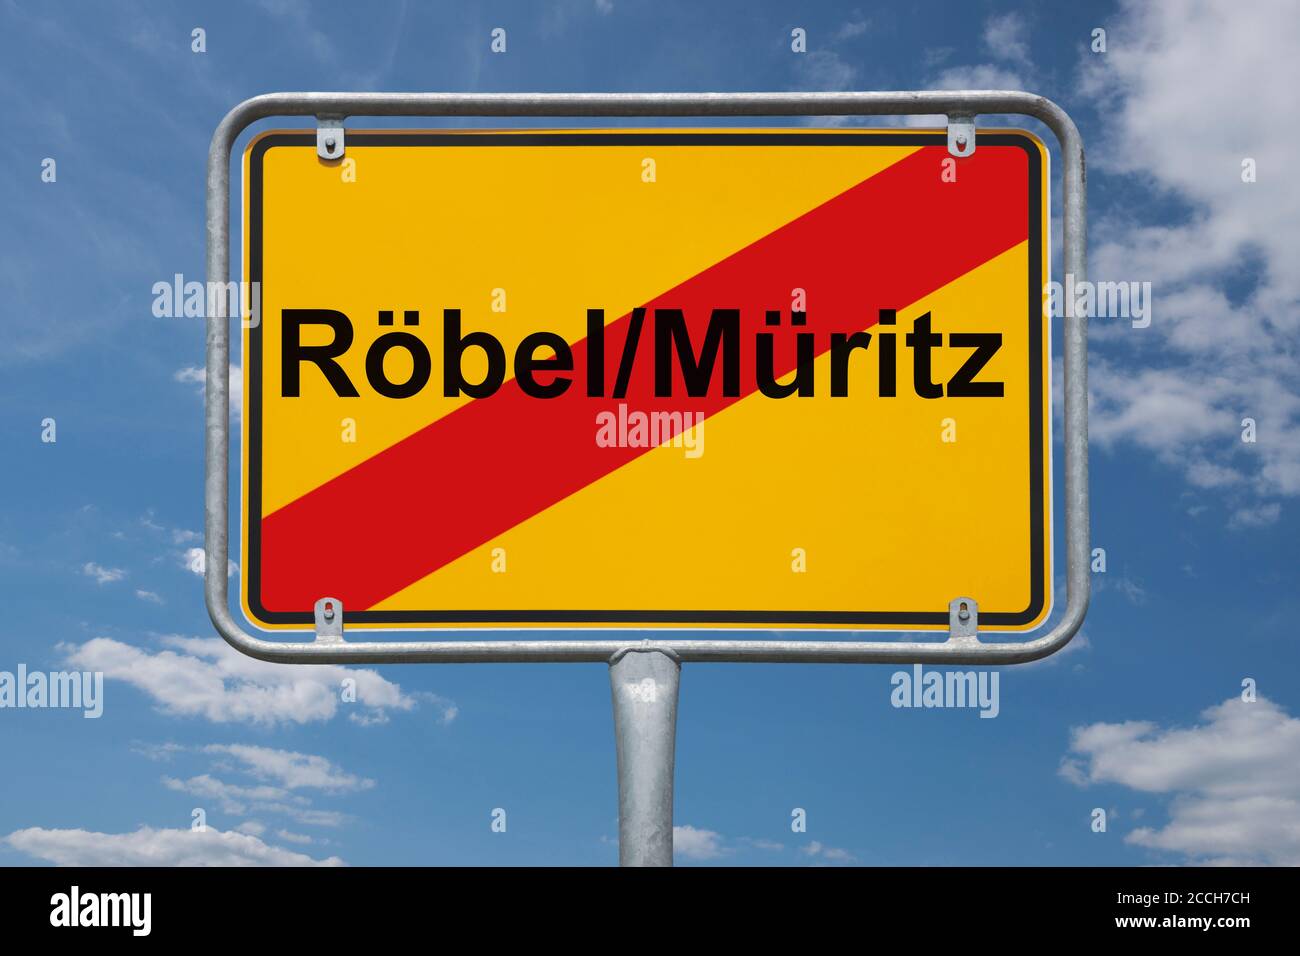 Ortstafel Röbel/Müritz, Mecklenburg-Vorpommern, Deutschland | Place name sign Röbel/Müritz, Mecklenburg-Vorpommern, Germany, Europe Stock Photo